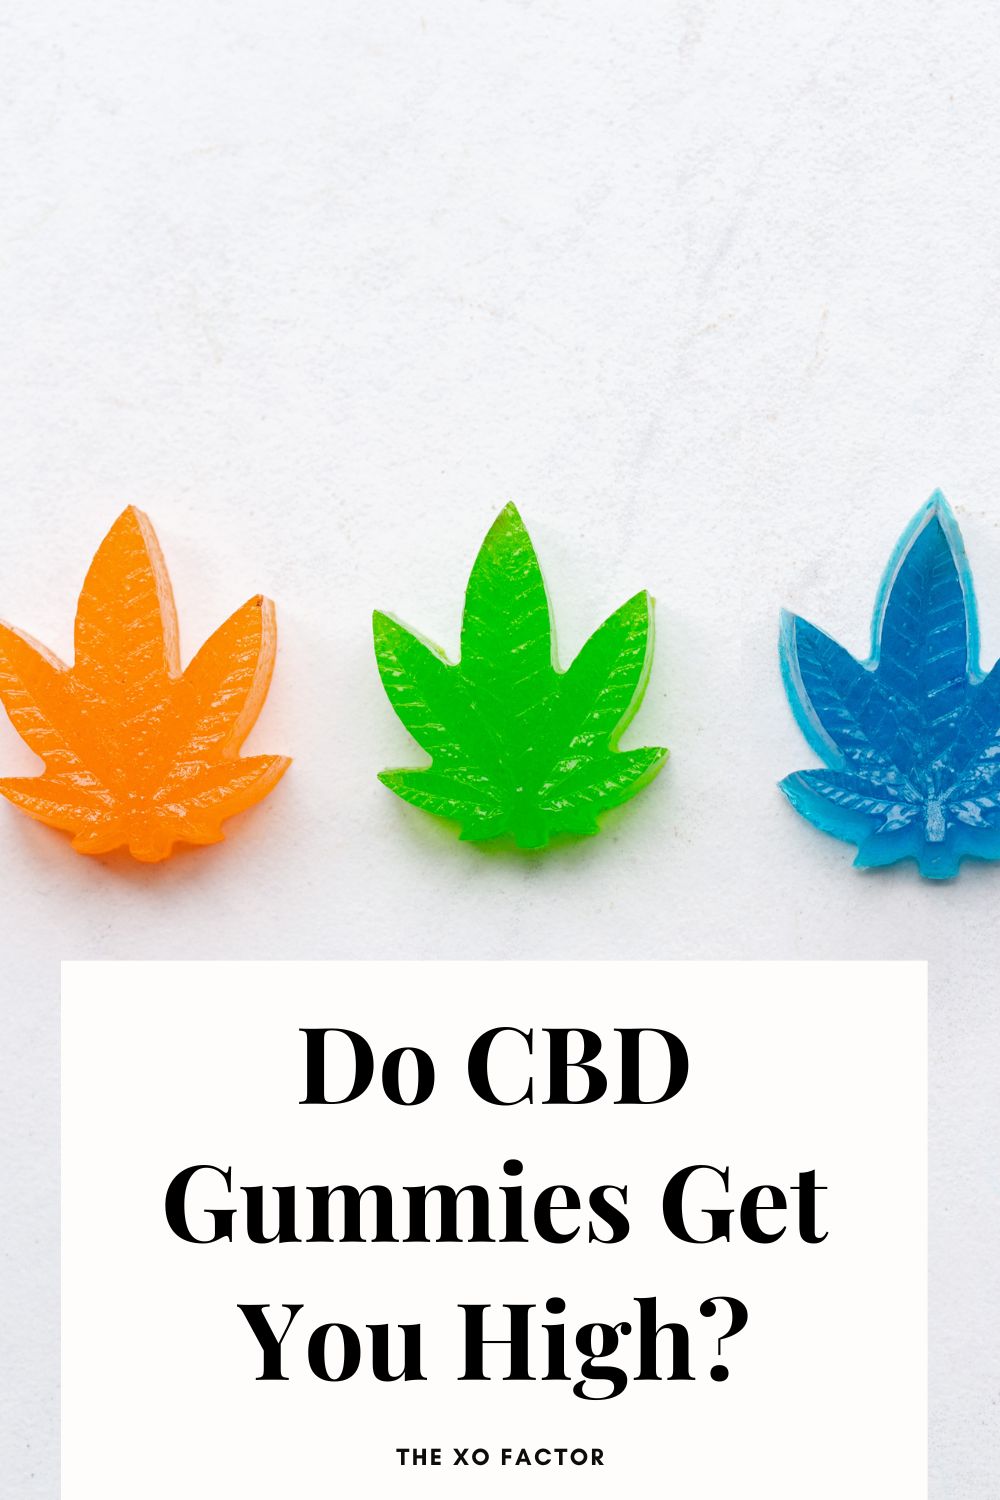 Do CBD Gummies Get You High?